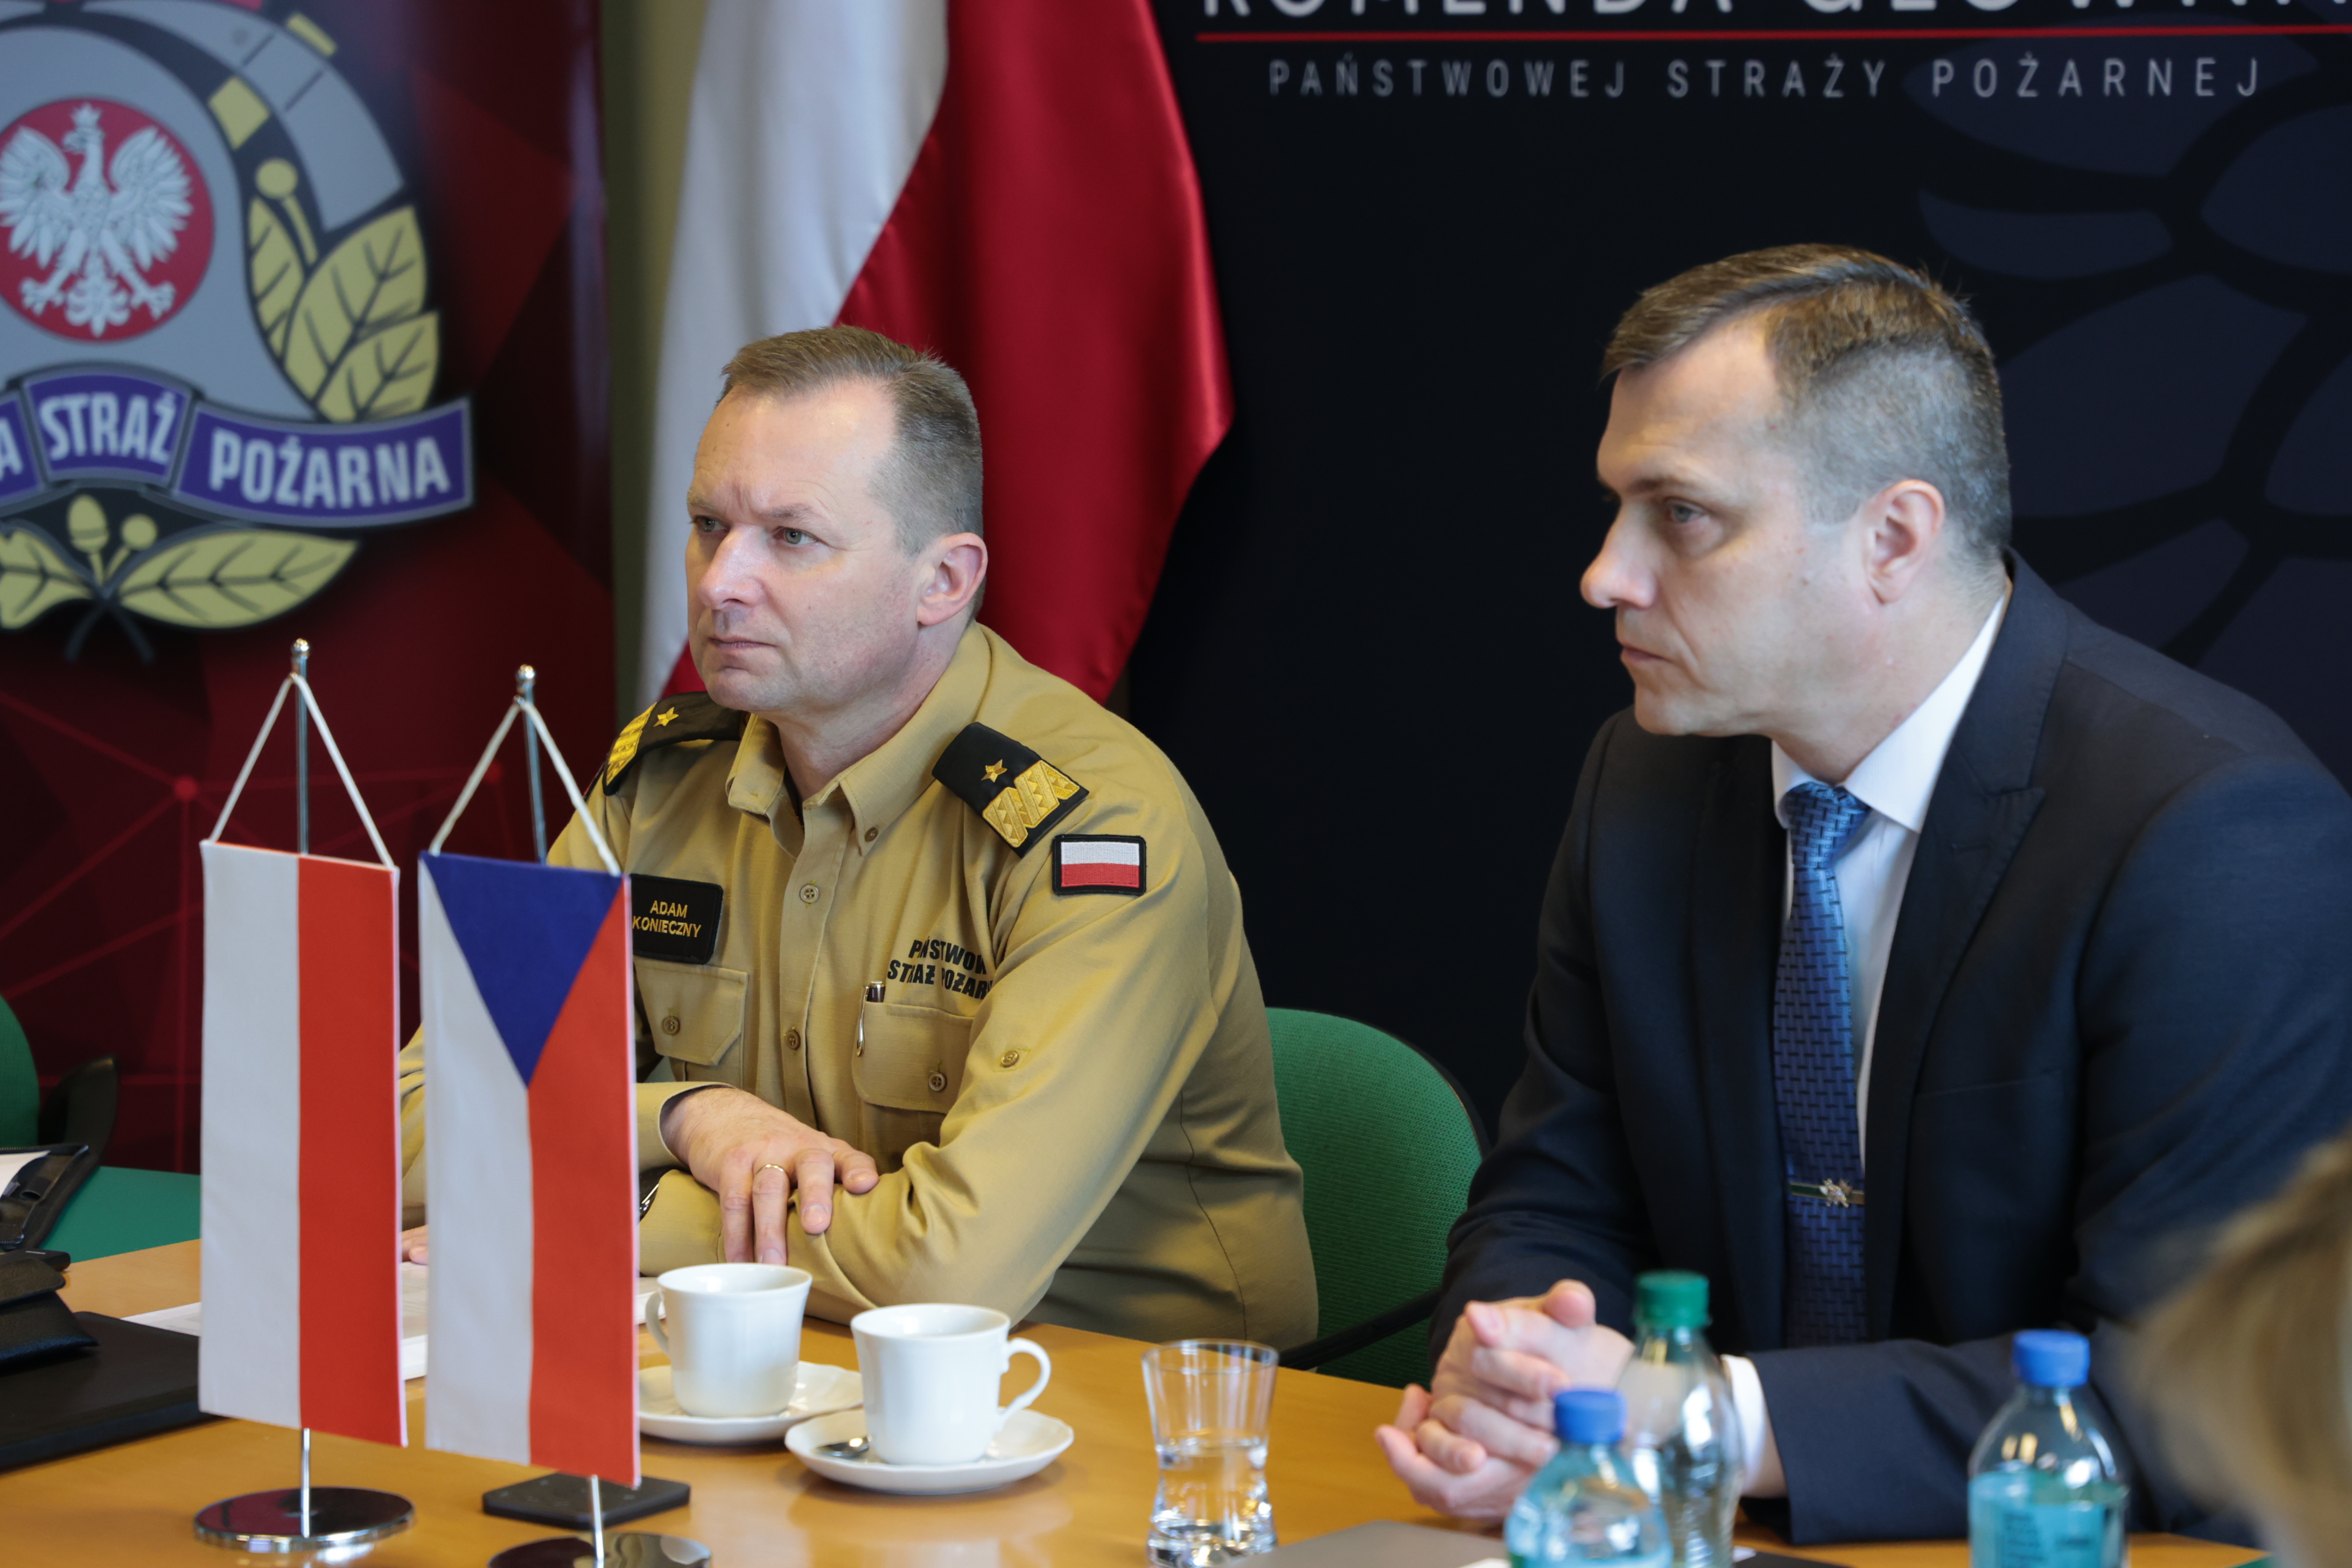 Zastępca komendanta głównego PSP wraz z przedstawicielem Czech siedzą przy stole podczas spotkania grupy roboczej, przed nimi stoją flagi Polski i Czech